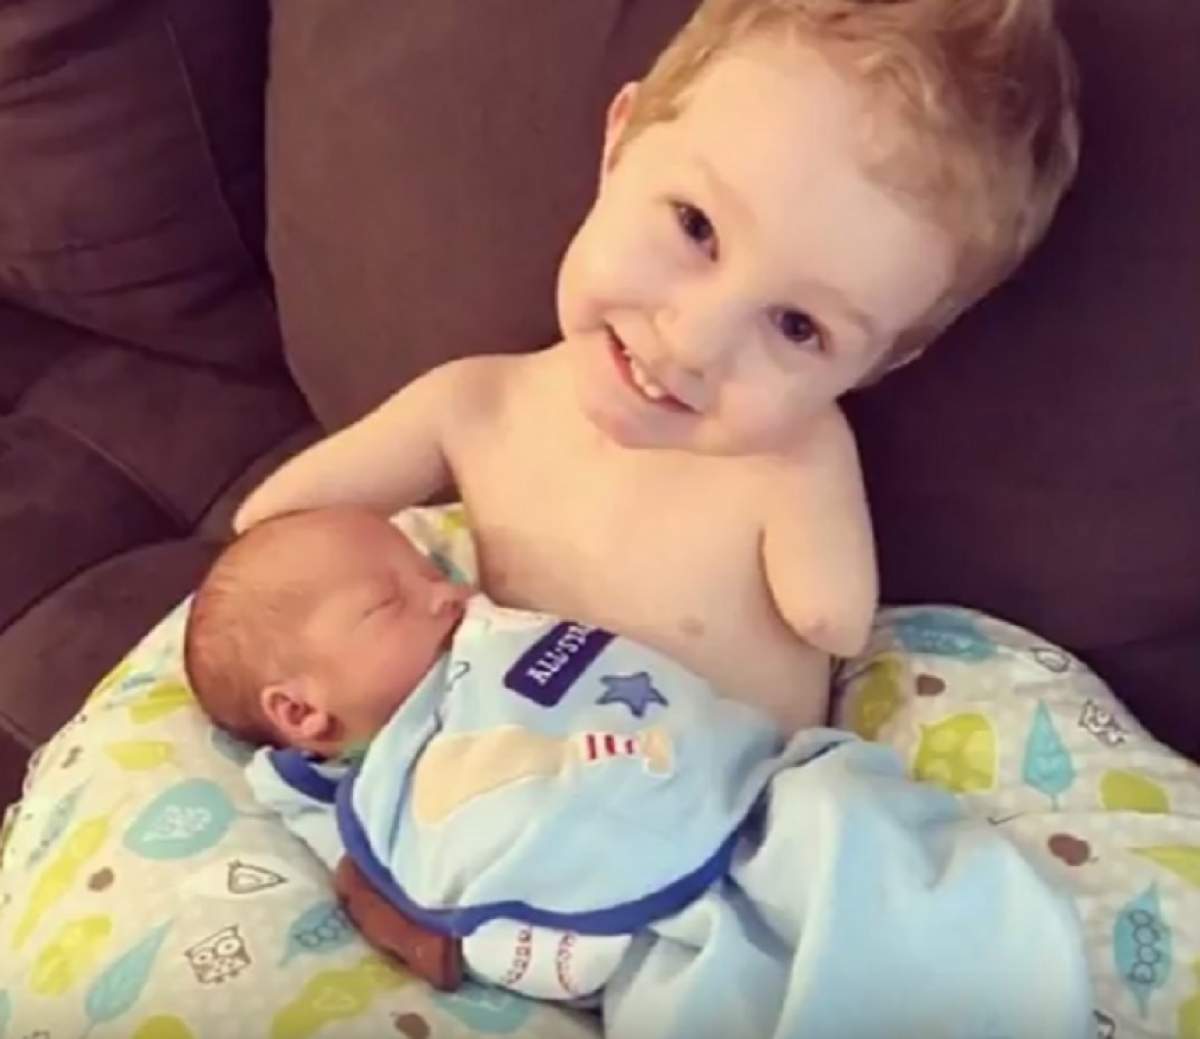 VIDEO / Emoţionant! Un bebeluş fără mâini şi picioare are grijă de fratele său. Oamenii au rămas impresionaţi